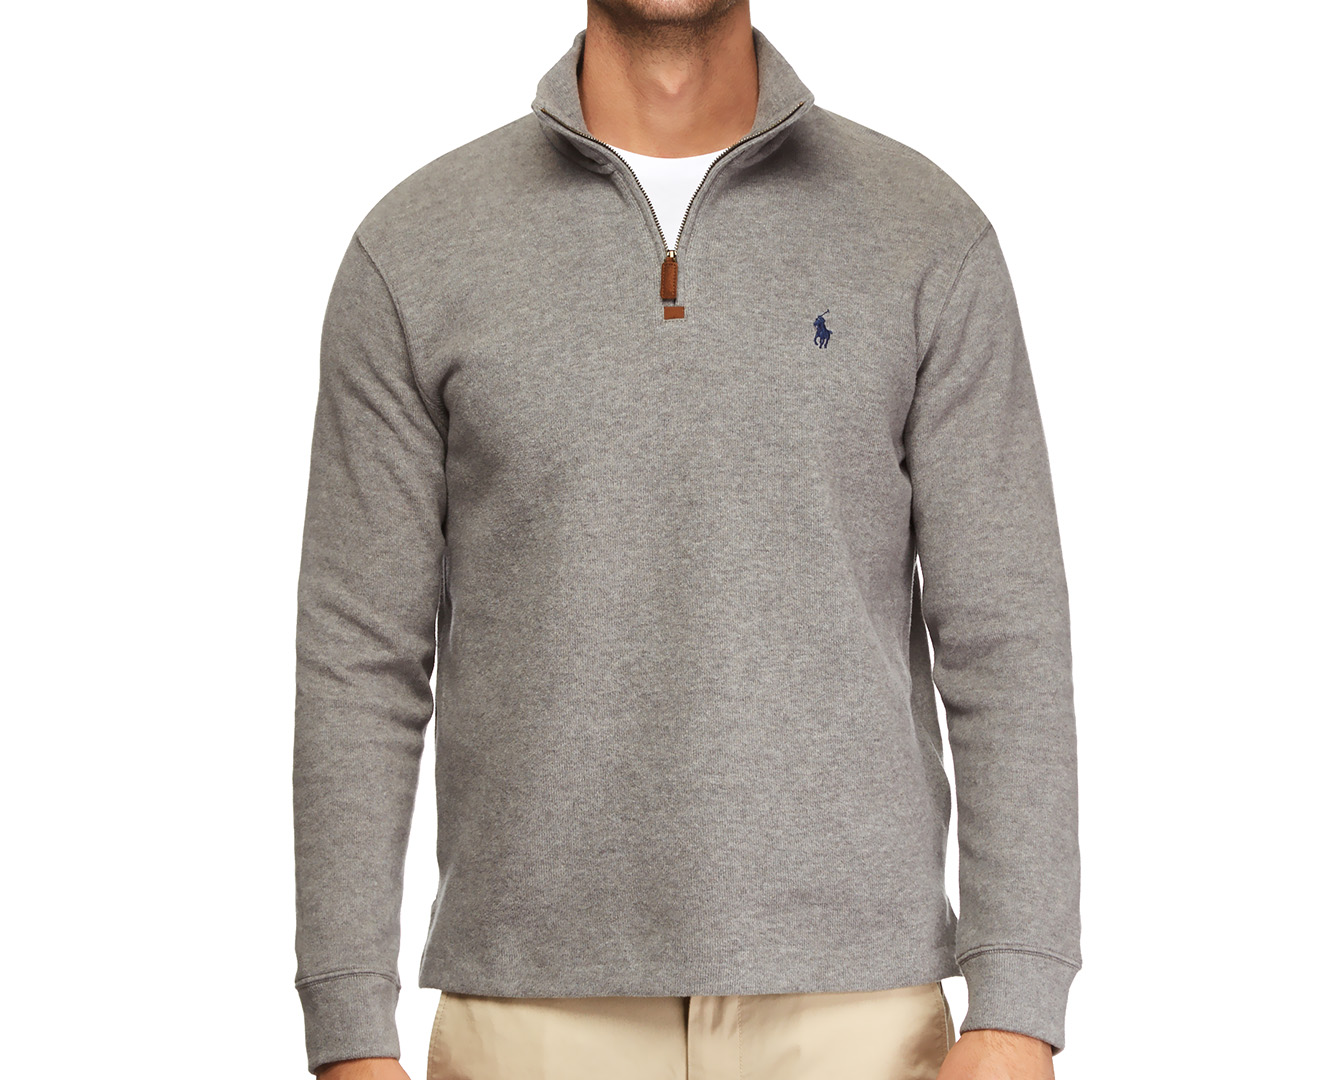 Polo Ralph Lauren Men's 1/4 Zip Pullover Sweater Winter Grey Catch